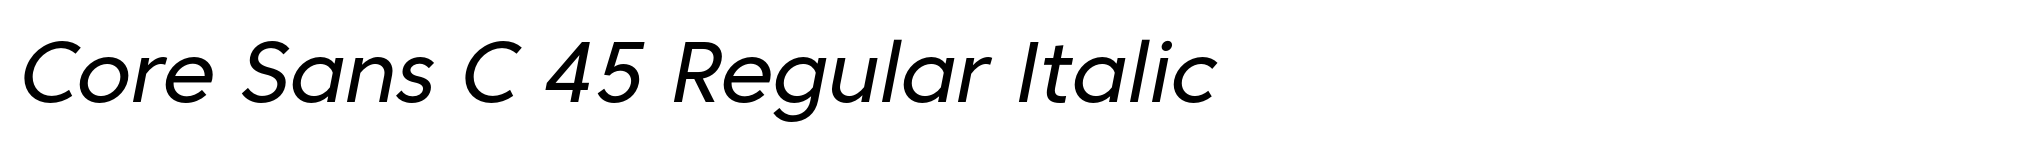 Core Sans C 45 Regular Italic image